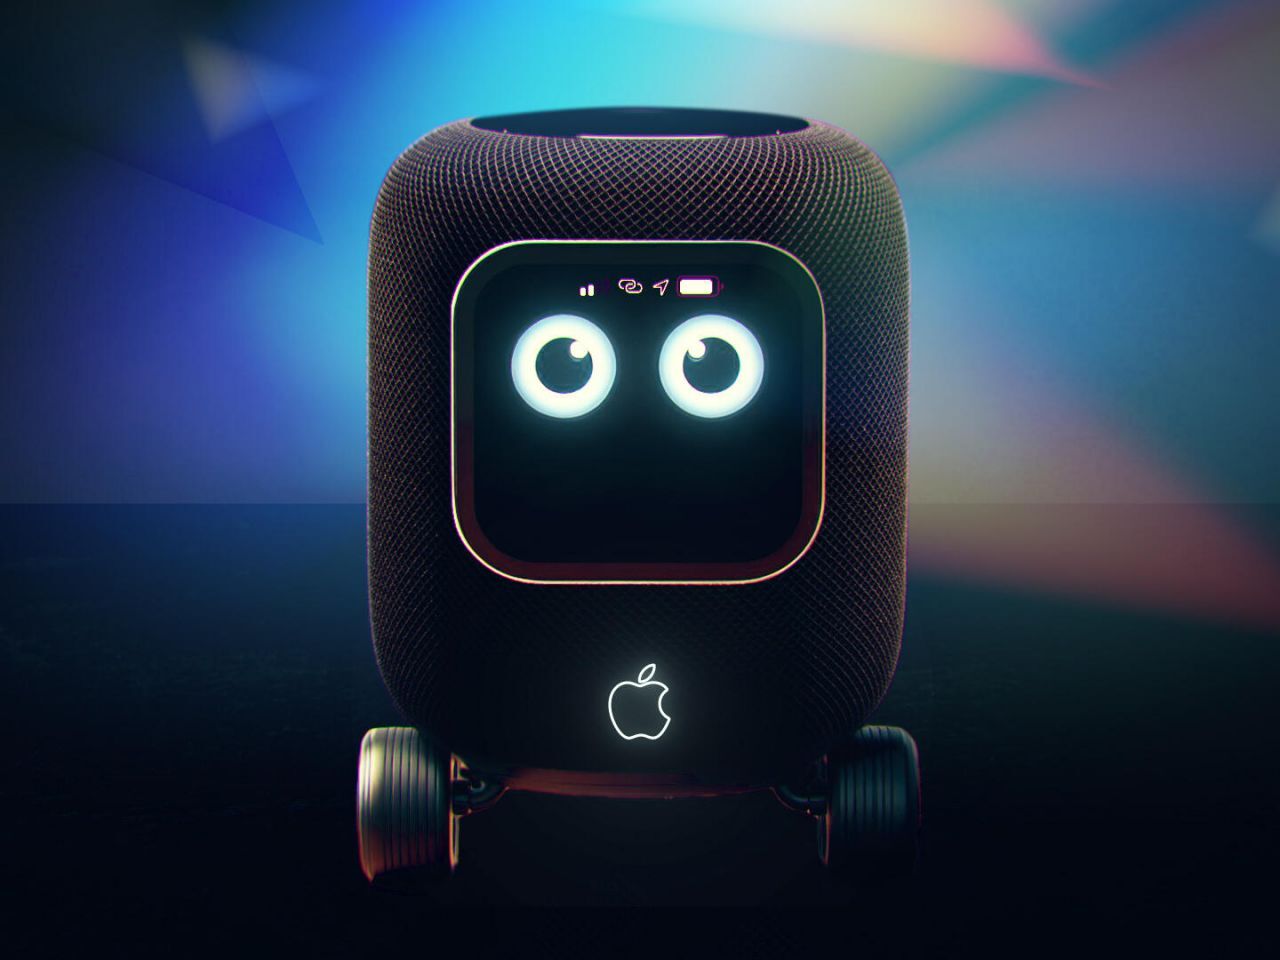 アップルの「家庭用ロボット」は受け入れられるのか - CNET Japan